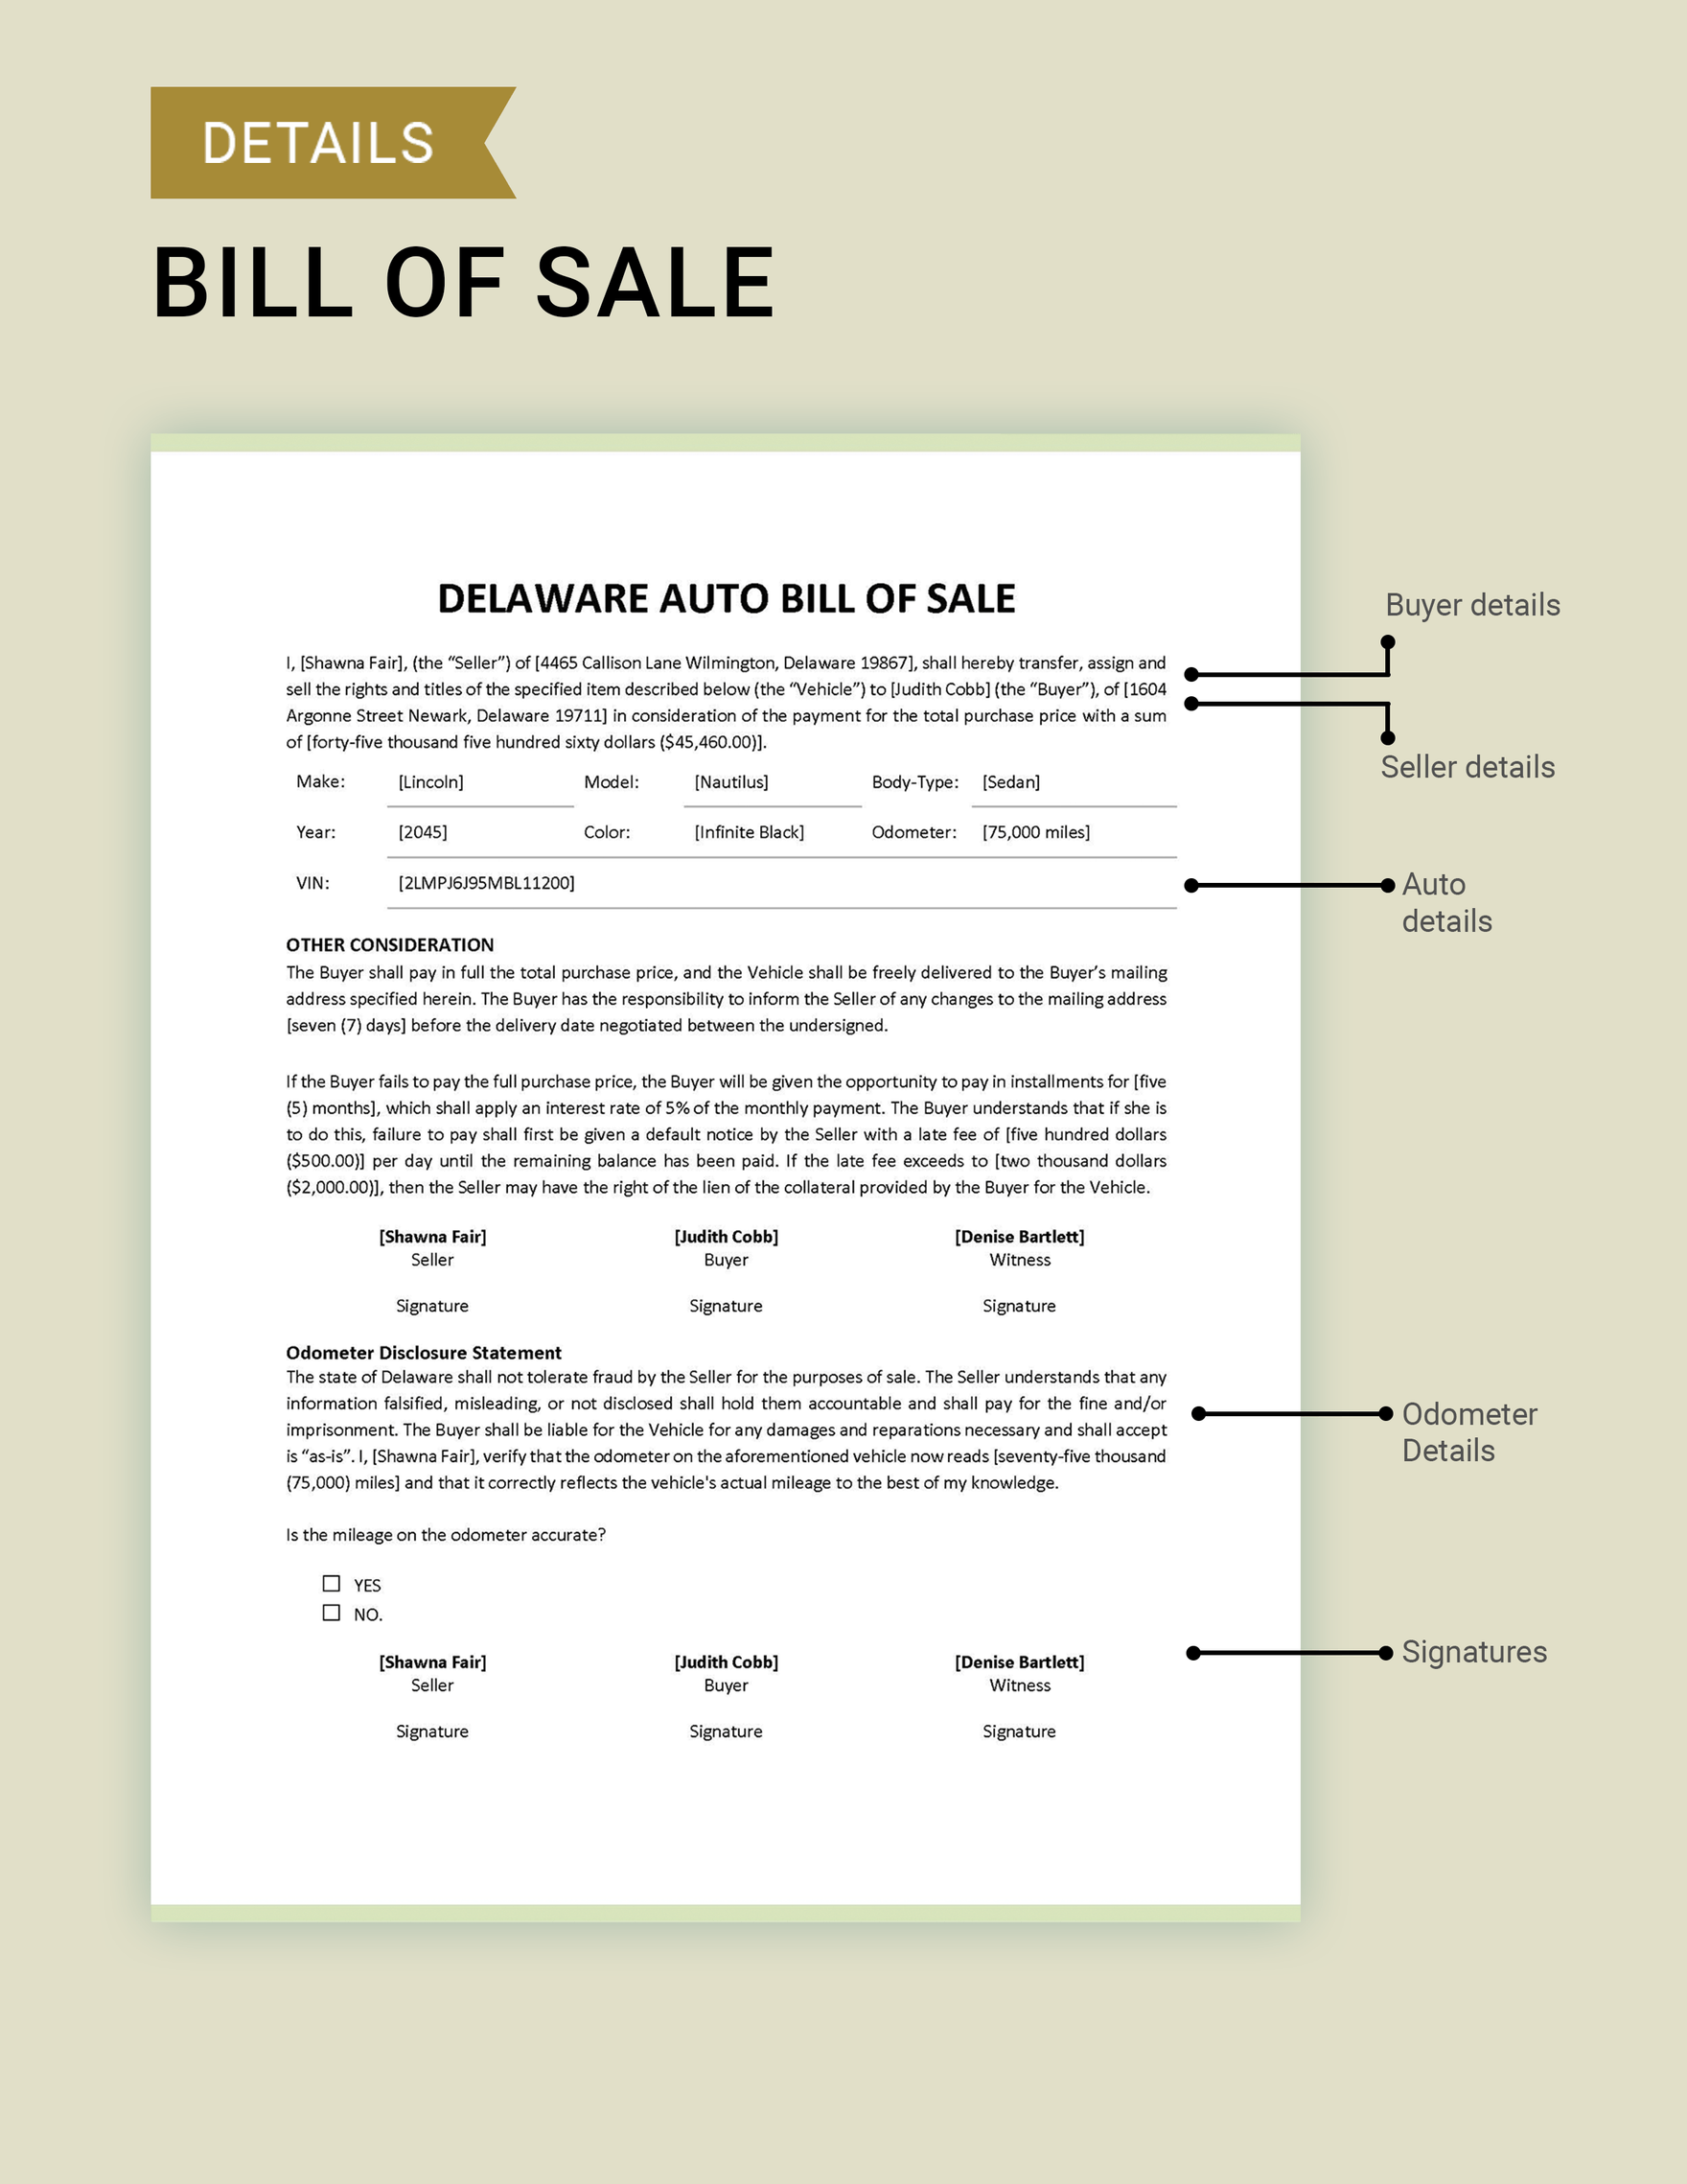 Delaware Auto Bill of Sale Template